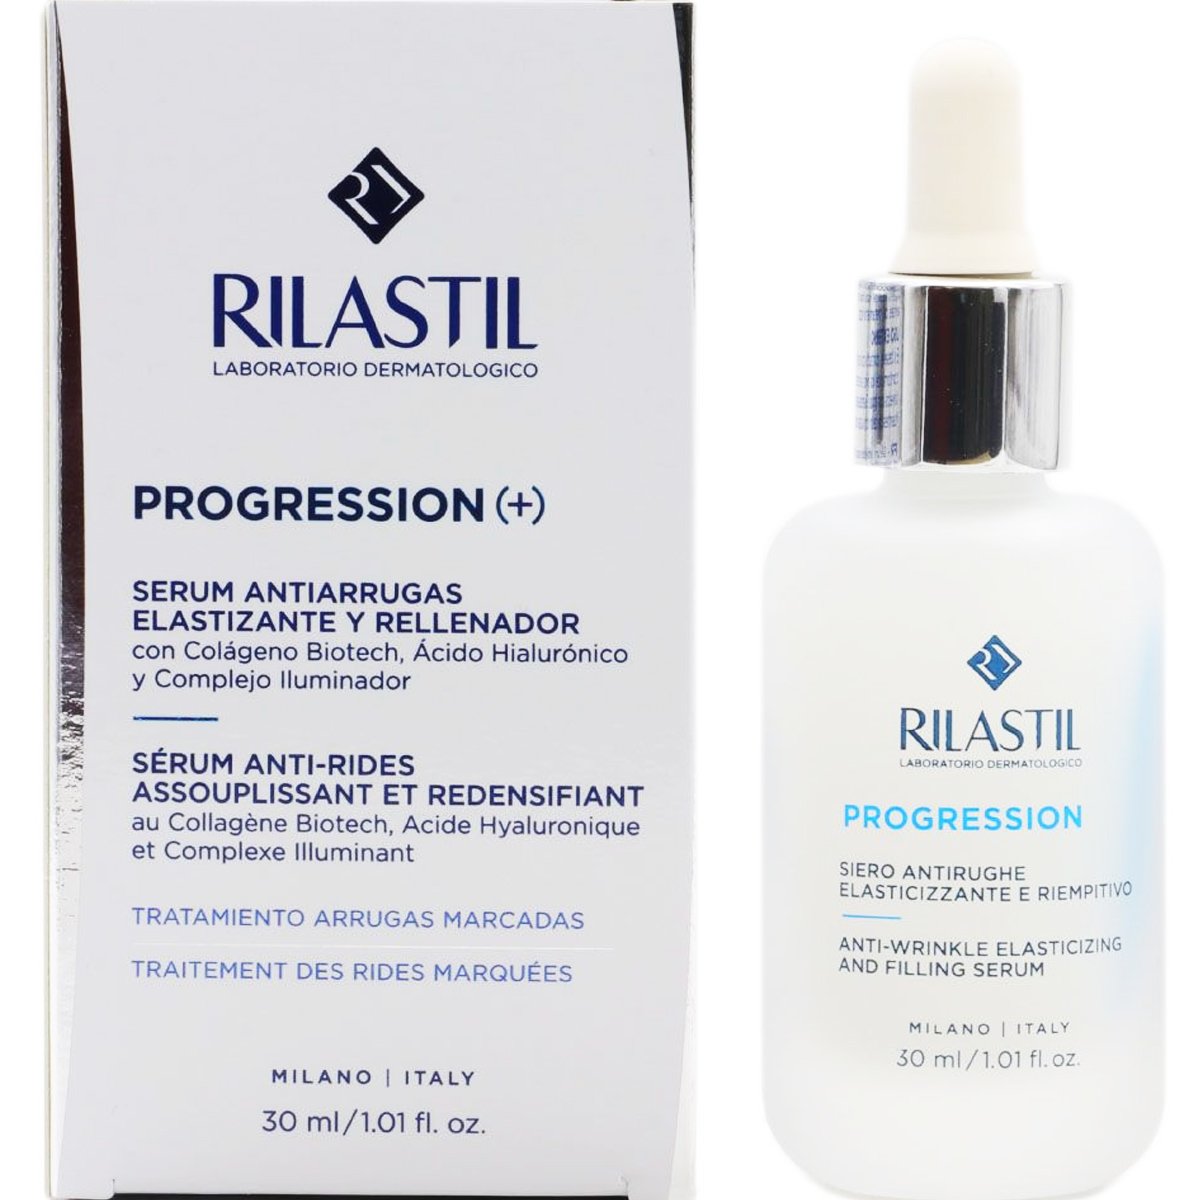 Rilastil Progression (+) Anti-Wrinkle Elasticizing & Filling Serum Αντιρυτιδικός Ορός για Ελαστικότητα & Λάμψη 30ml 56997